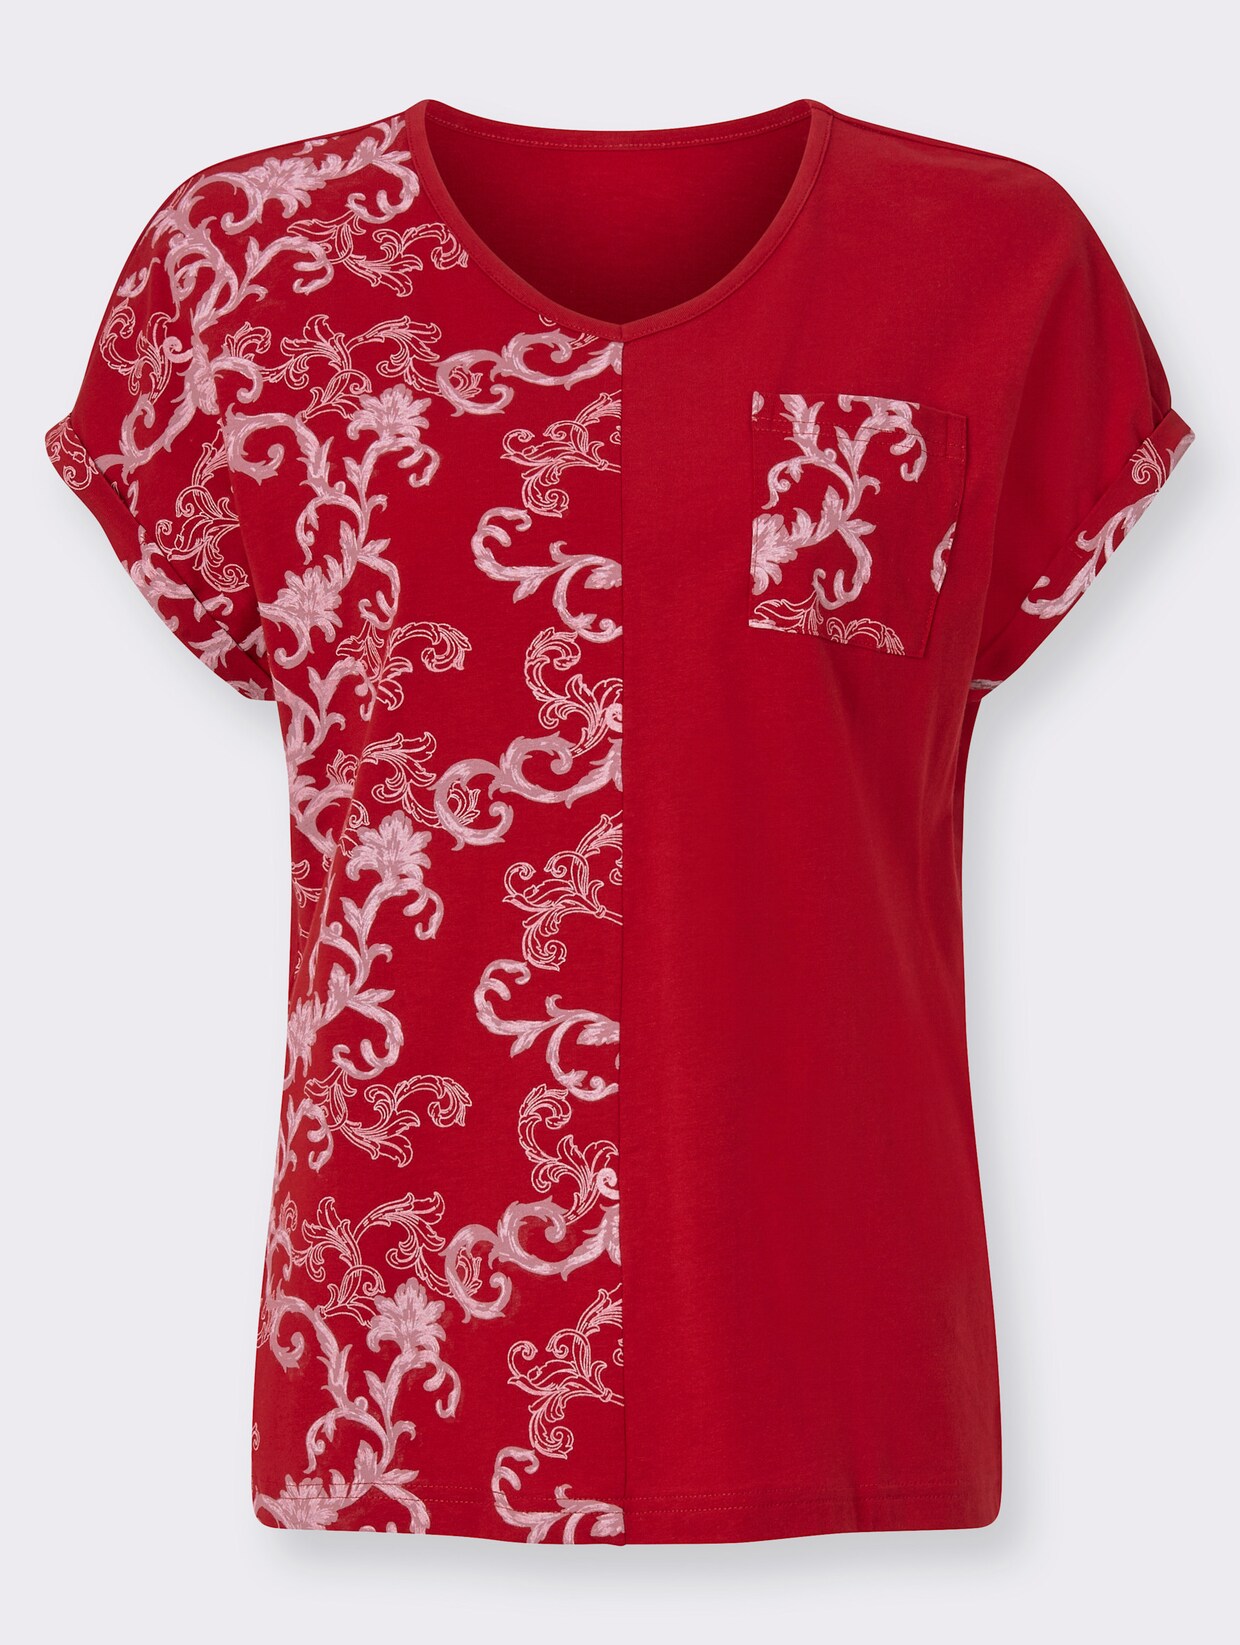 Tričko s krátkým rukávem - červená-vzor